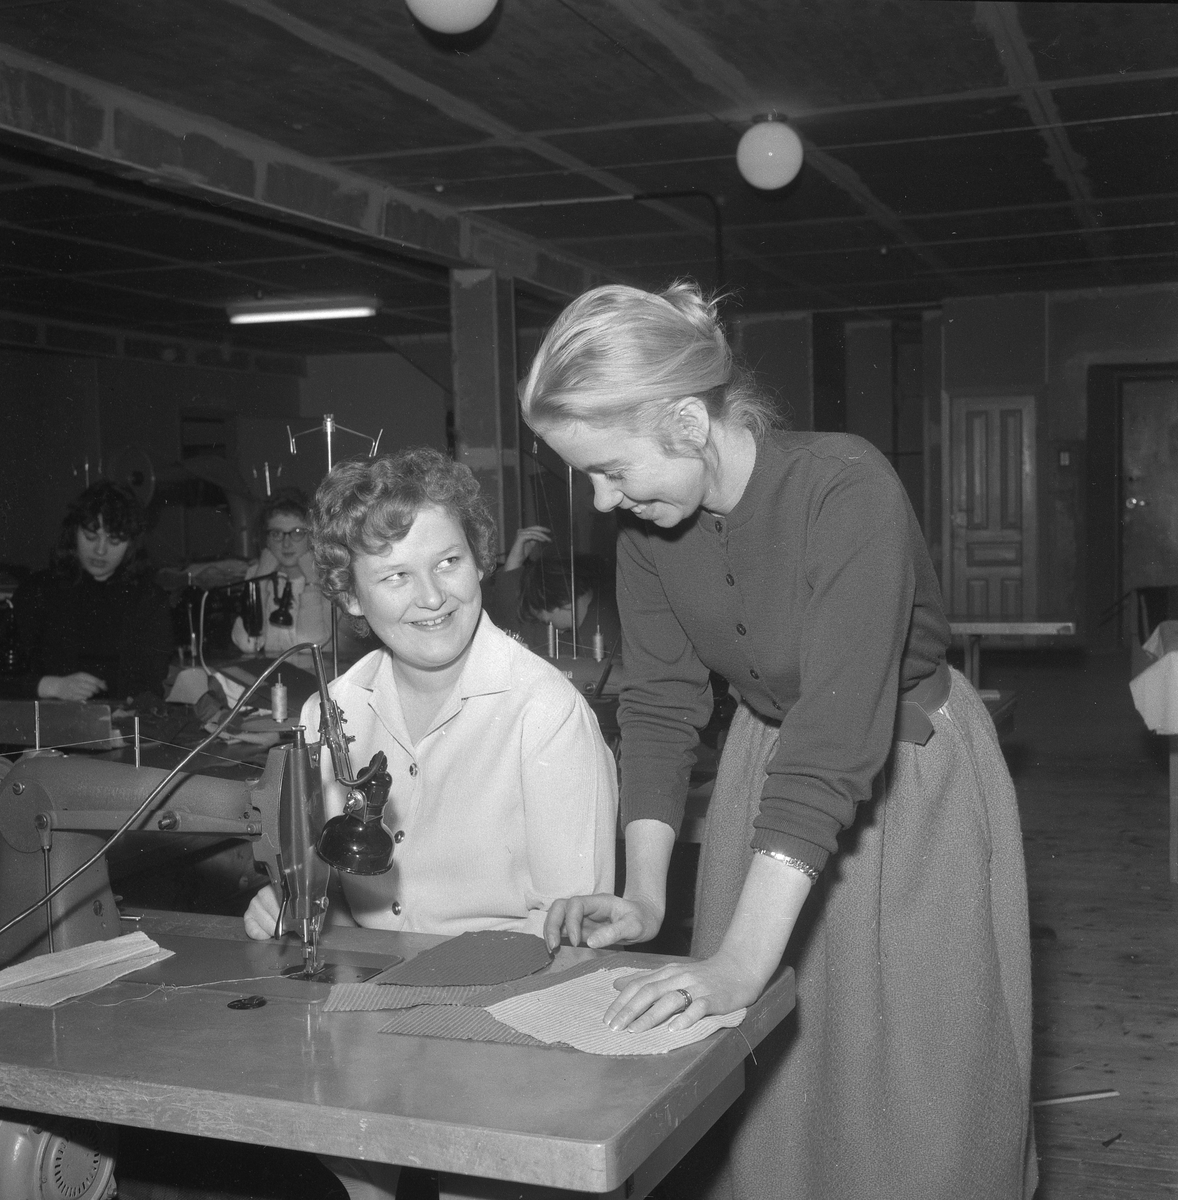 Omskolningskurser i Örebro.
5 december 1958.